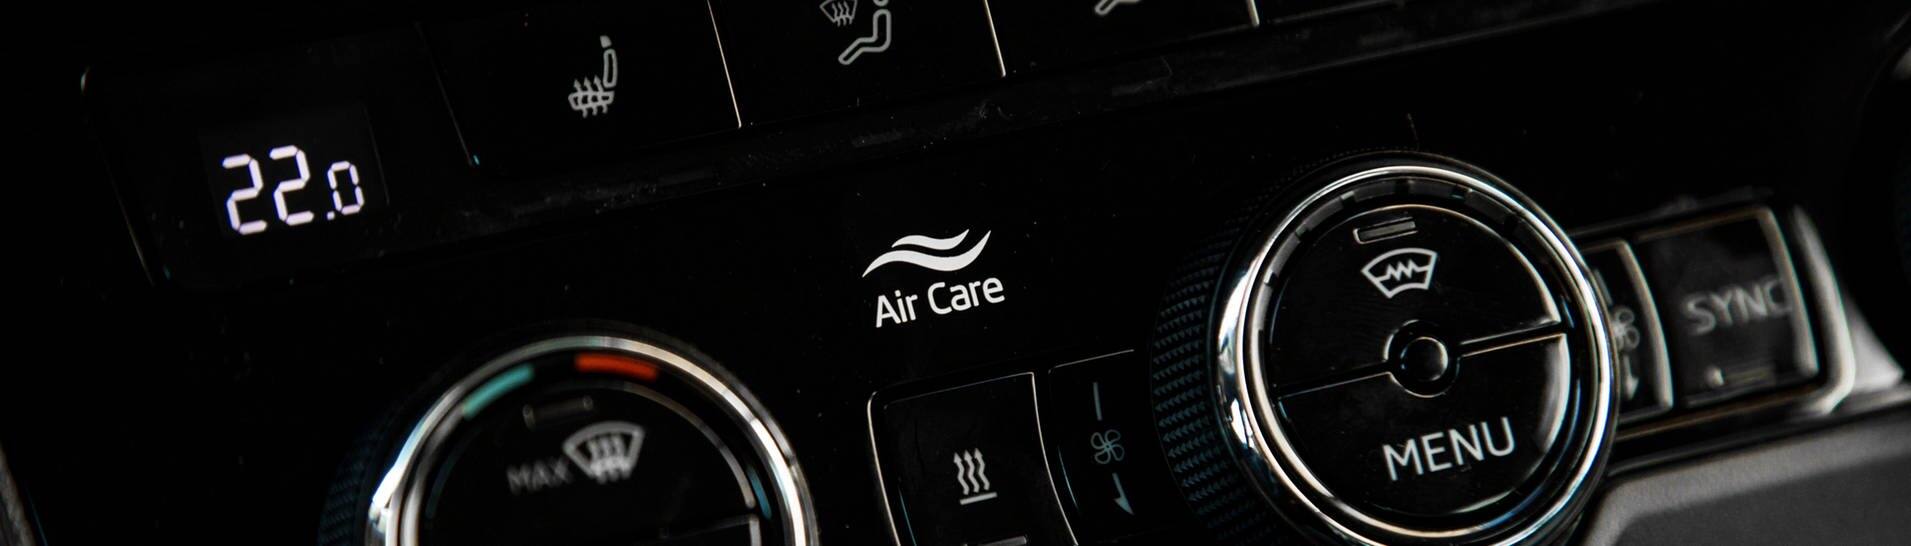 Klimaanalage im Auto – so bleibt es kühl